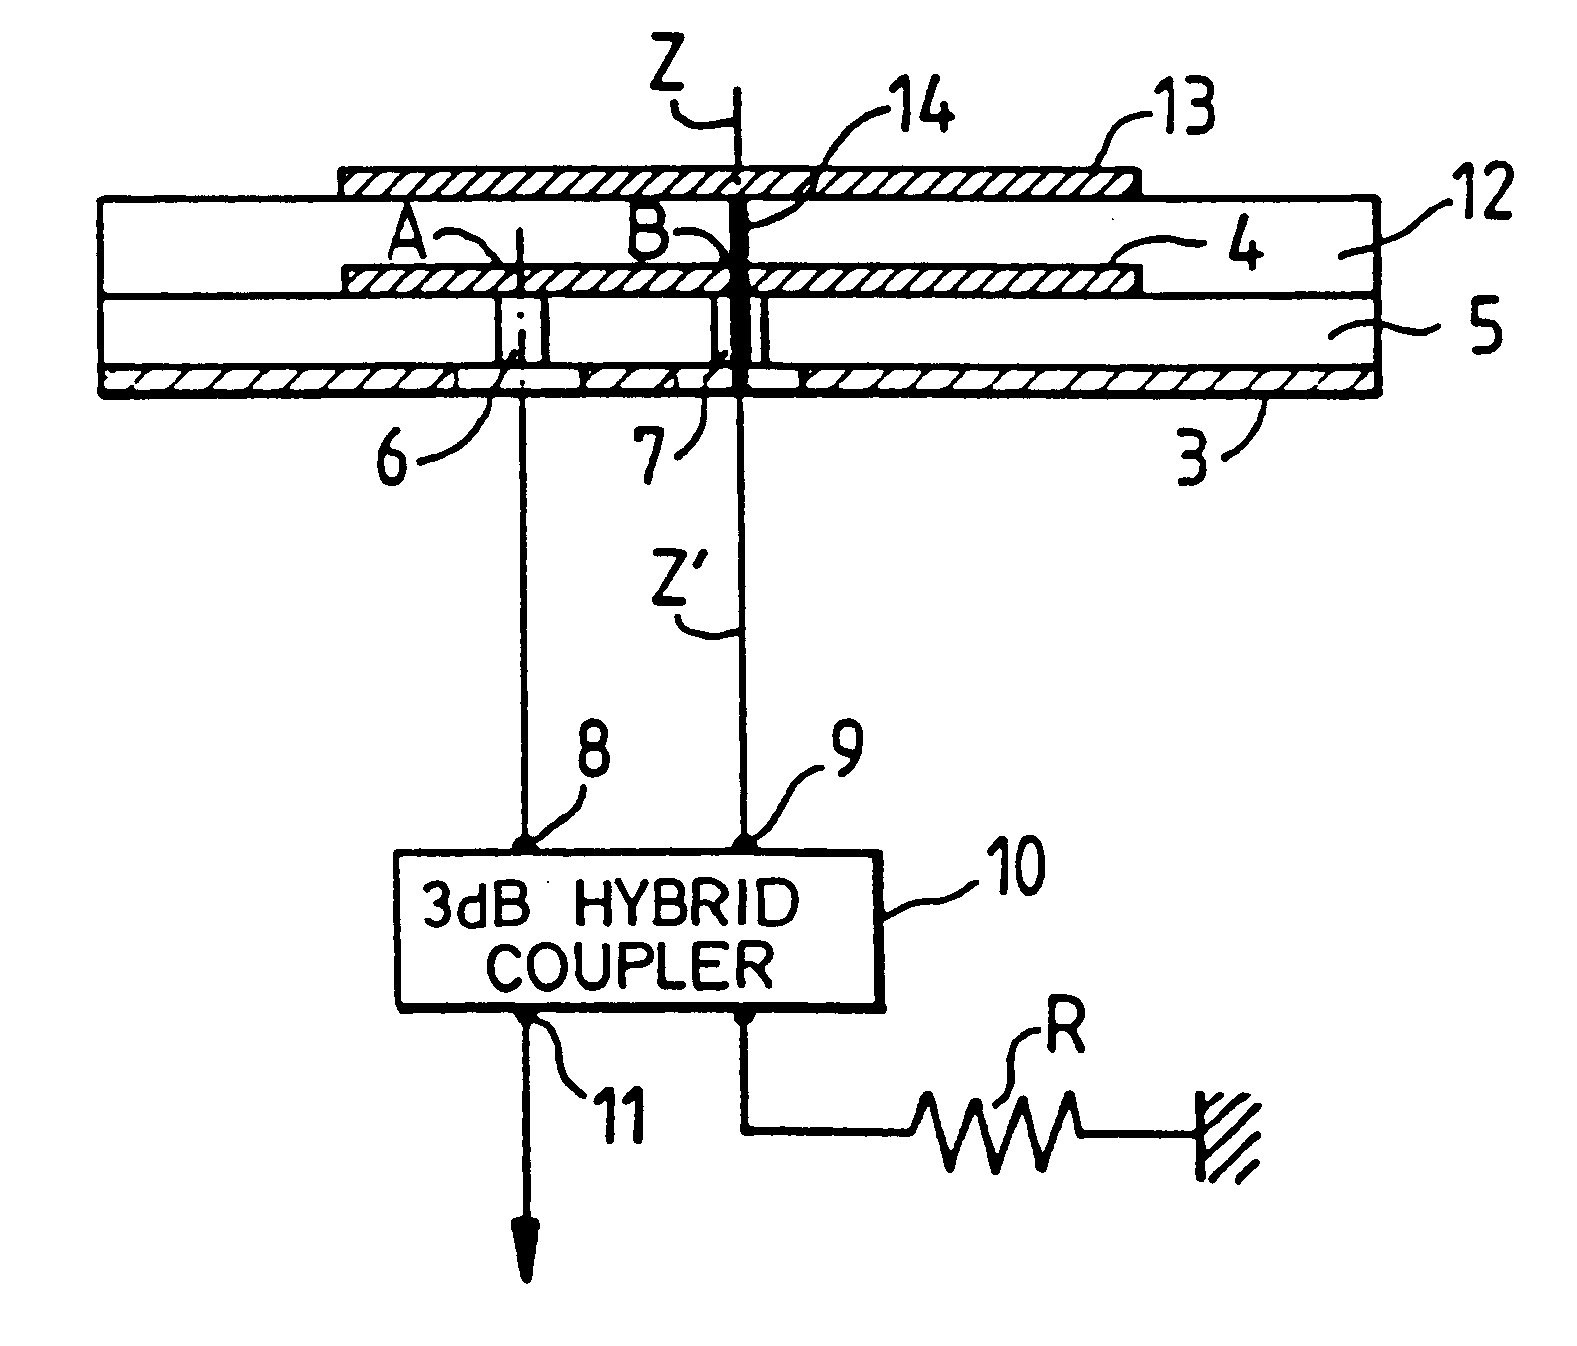 Multifunction printed-circuit antenna